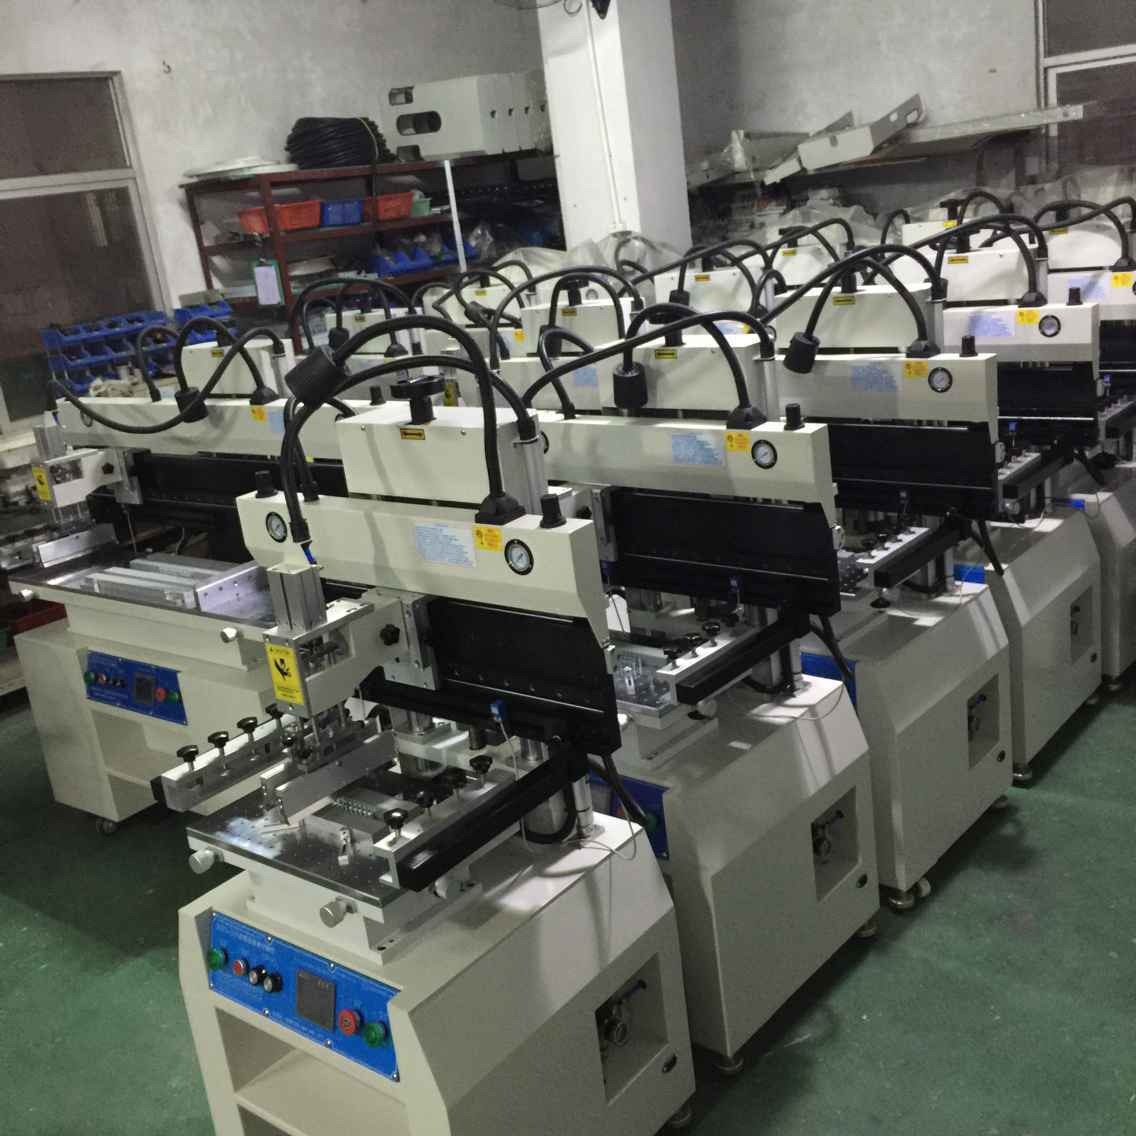 琦琦自动化  深圳生产QQYS-3250半自动锡膏印刷机  PCB锡膏印刷机  SMT丝印机图片